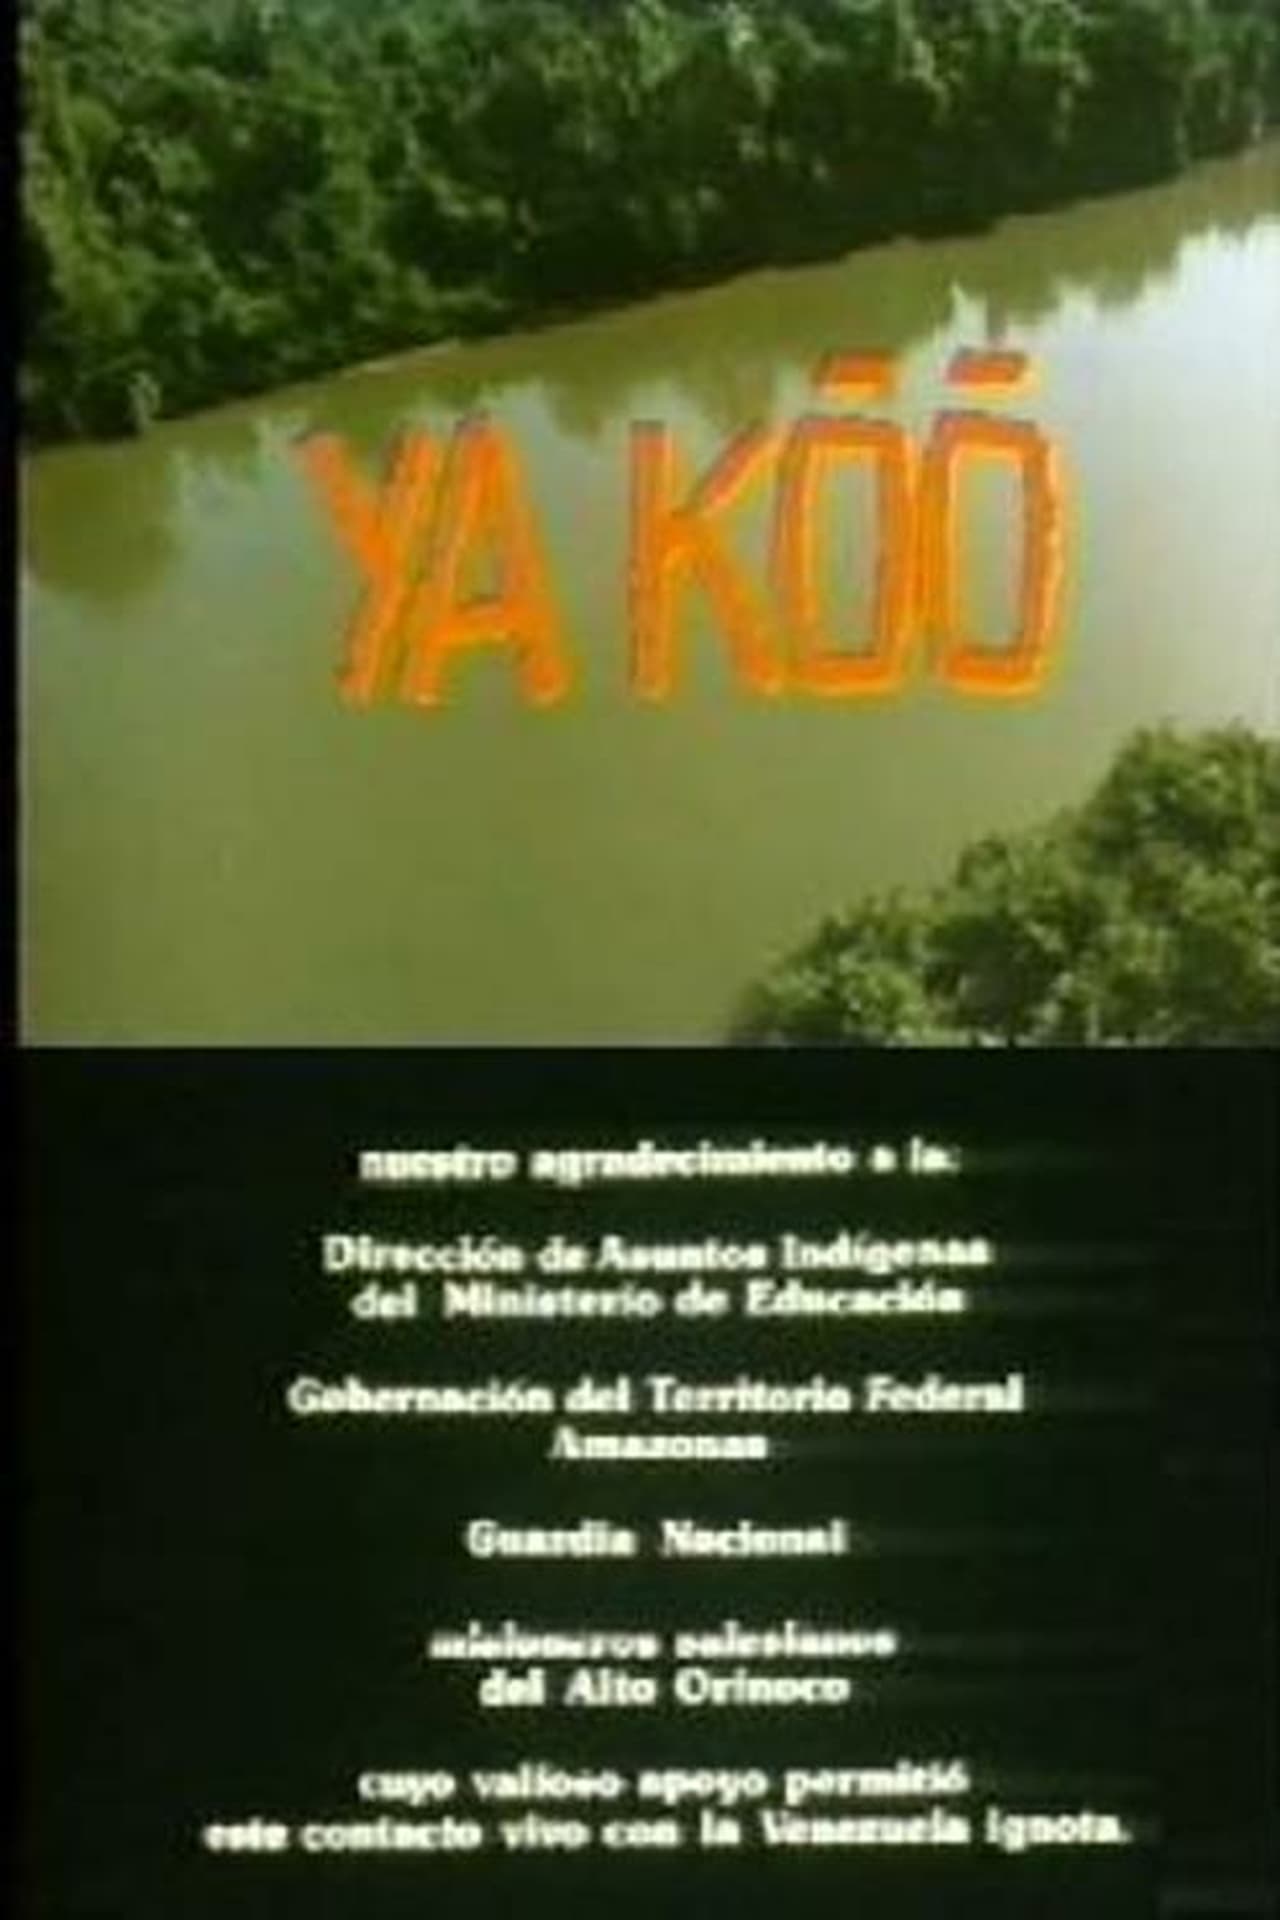 Ya Koo (1985) with English Subtitles on DVD on DVD